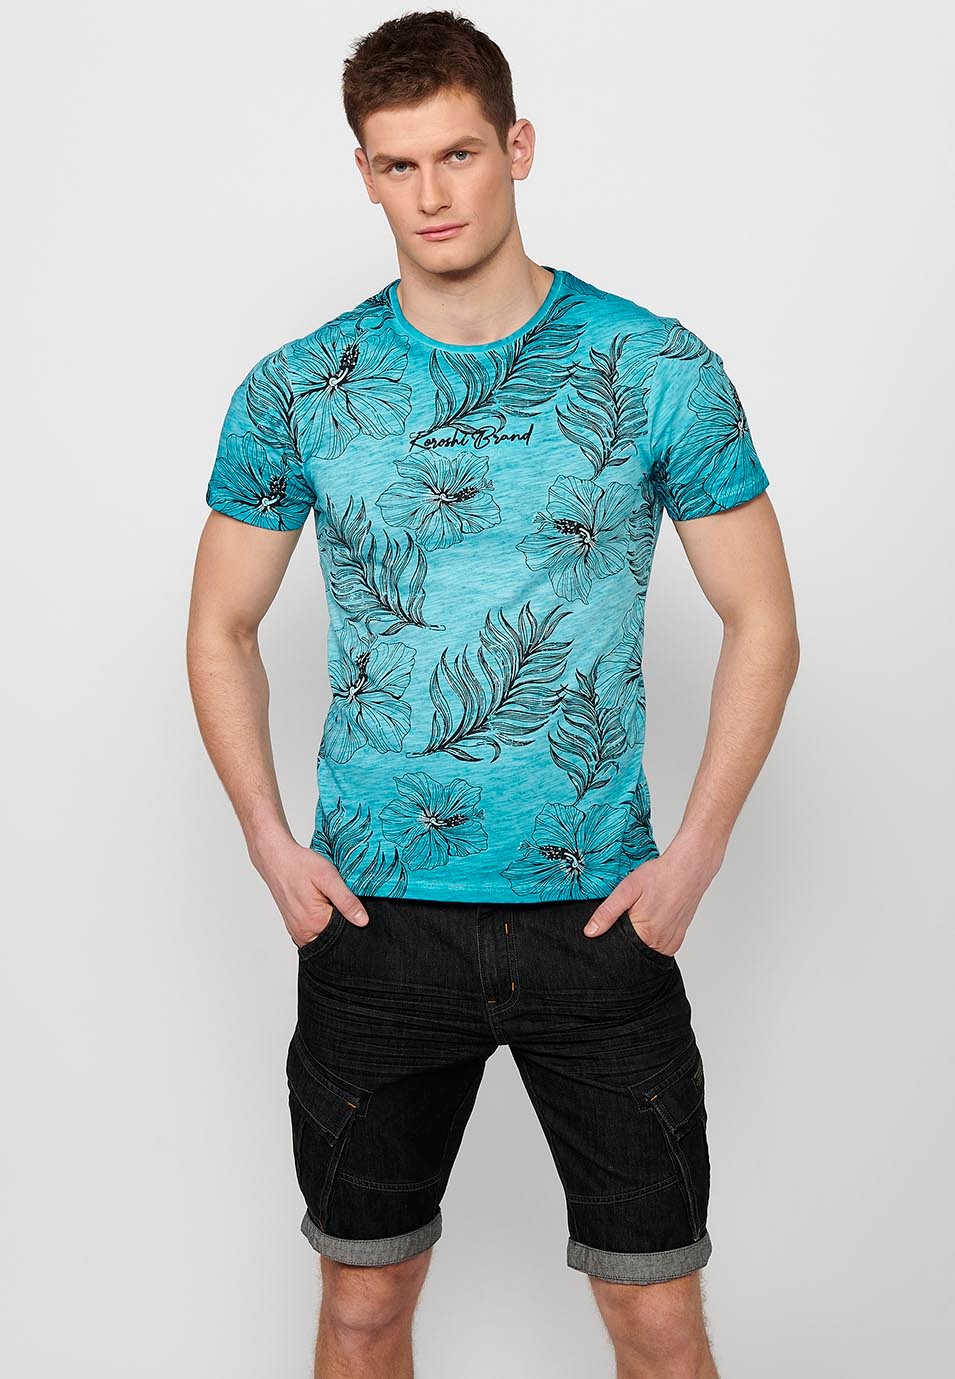 Camiseta de manga corta de algodon, estampado floral color menta para hombre